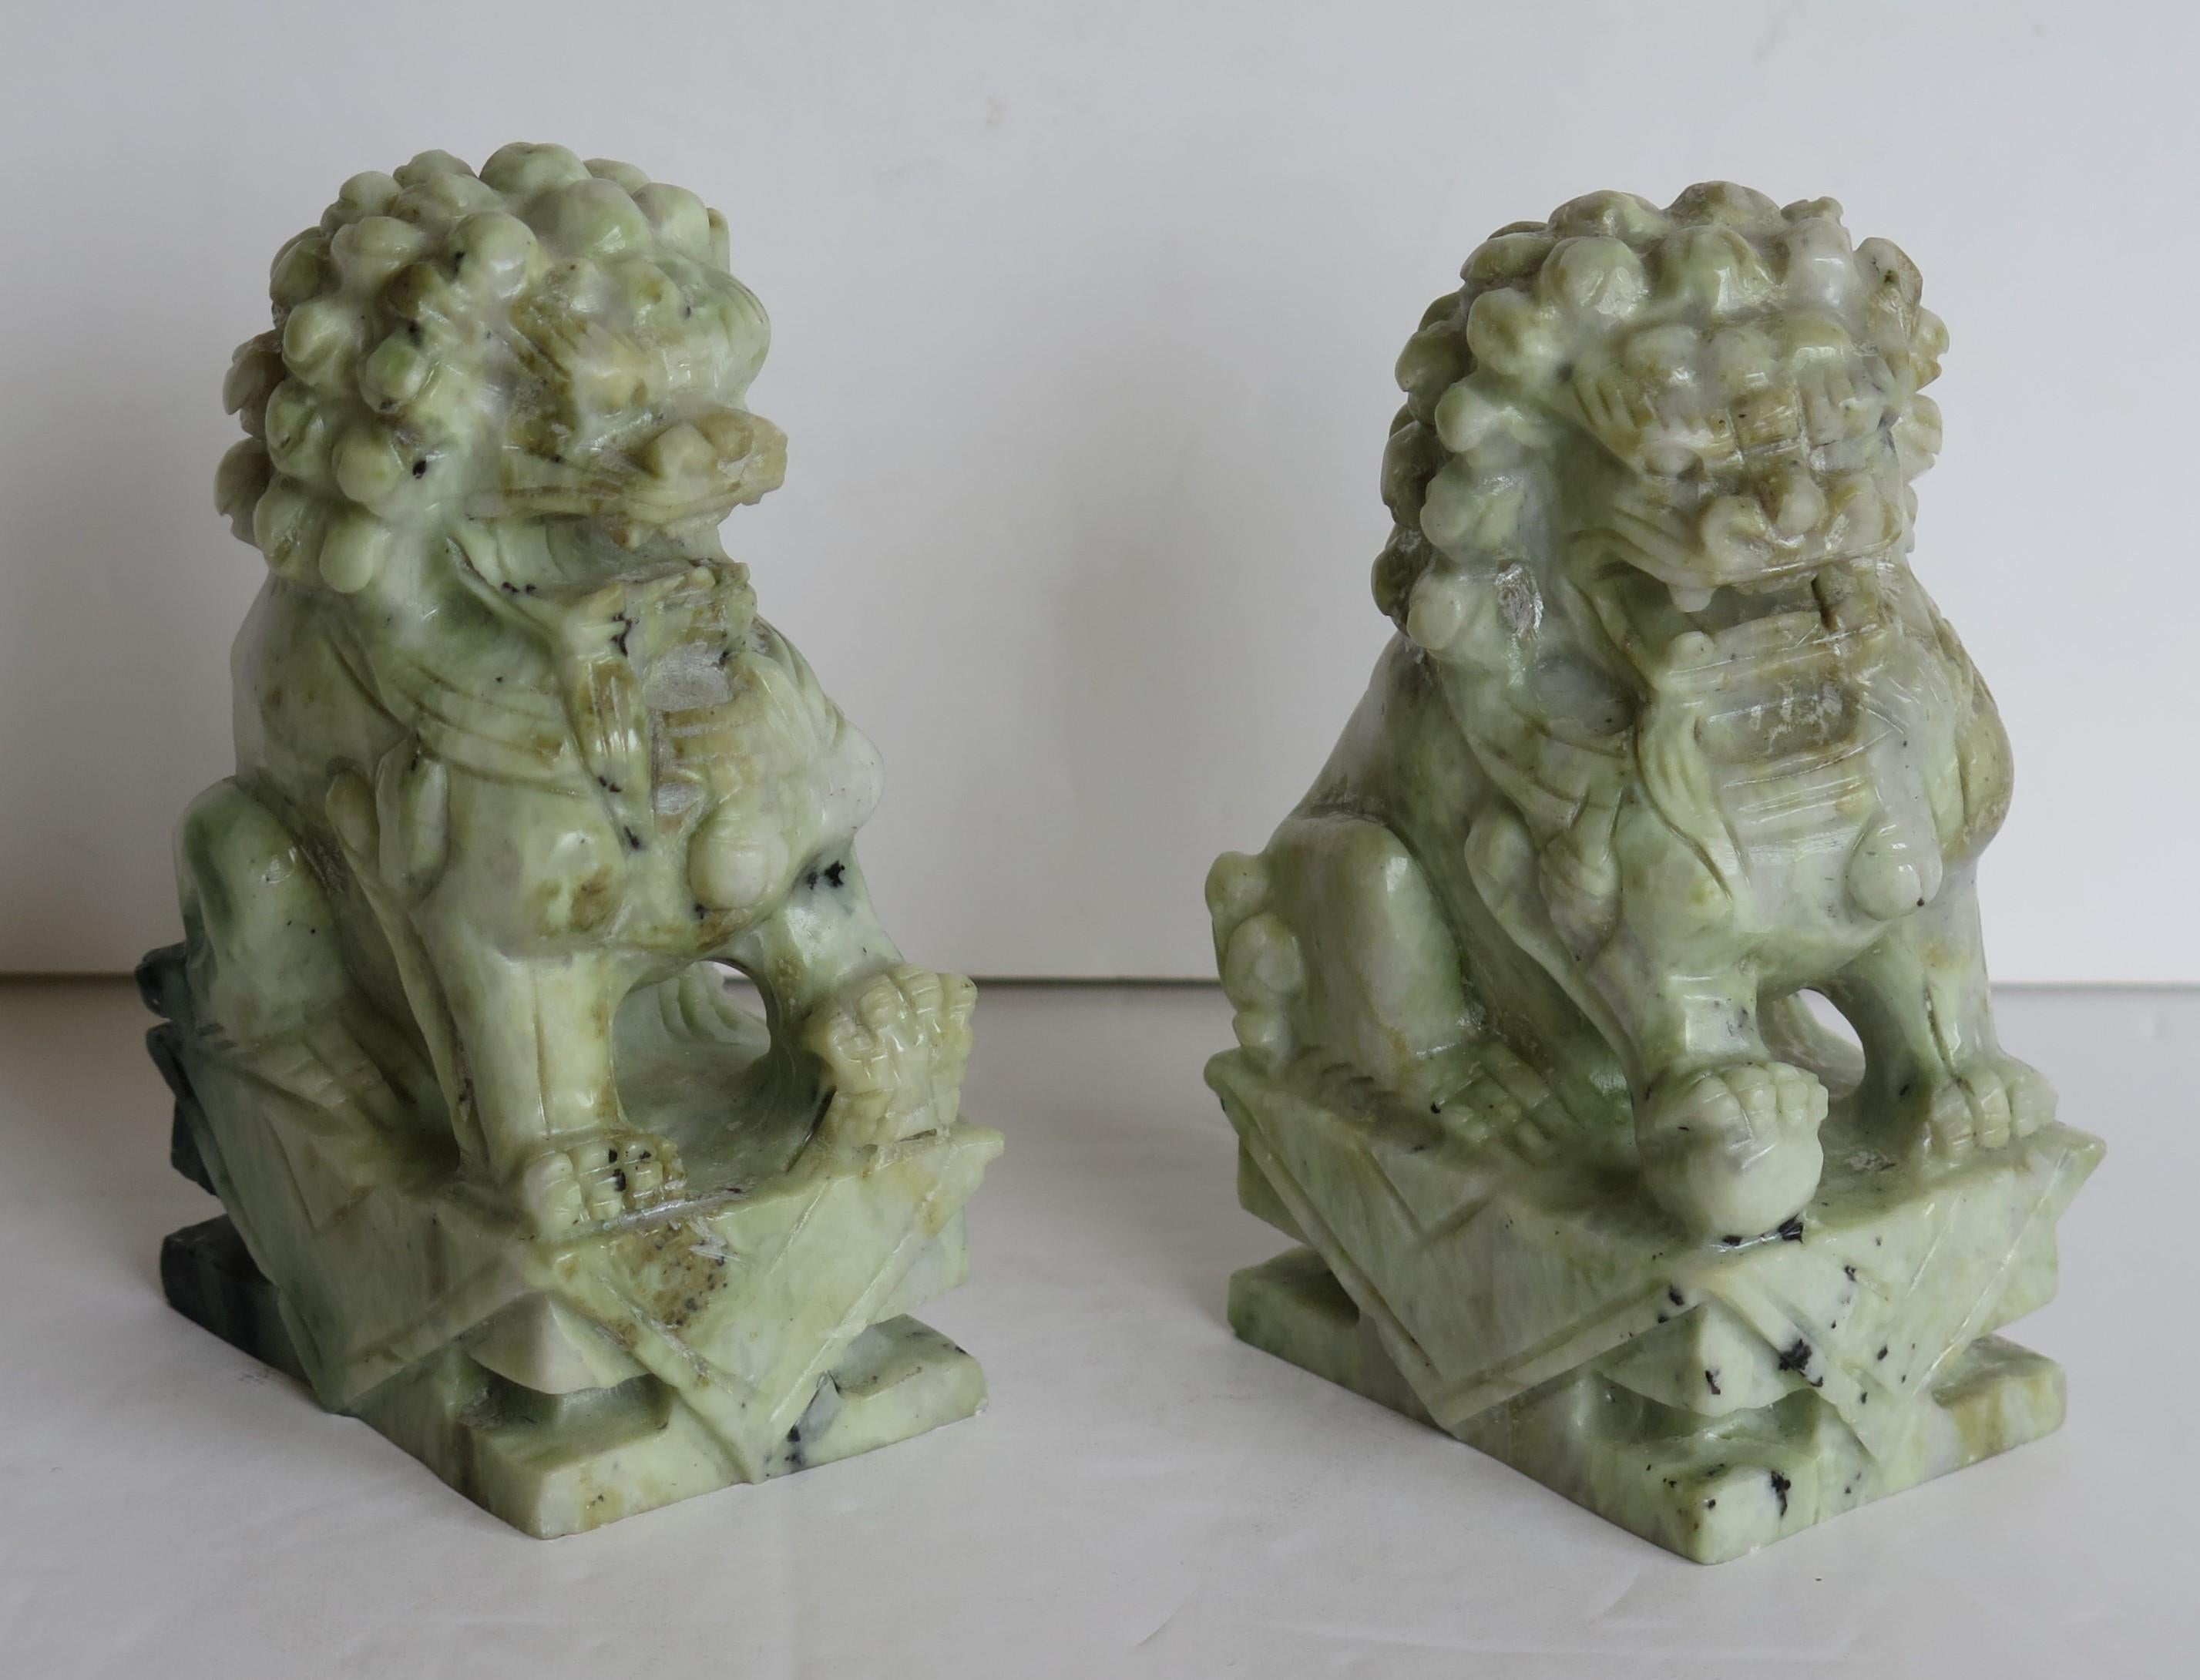 Il s'agit d'une très belle paire d'anciens chiens-lions chinois, parfois appelés lions du temple, en pierre dure, sculptés à la main avec de fins détails et polis, datant du milieu du 20e siècle, vers 1940 ou peut-être plus tôt.

Les deux pièces